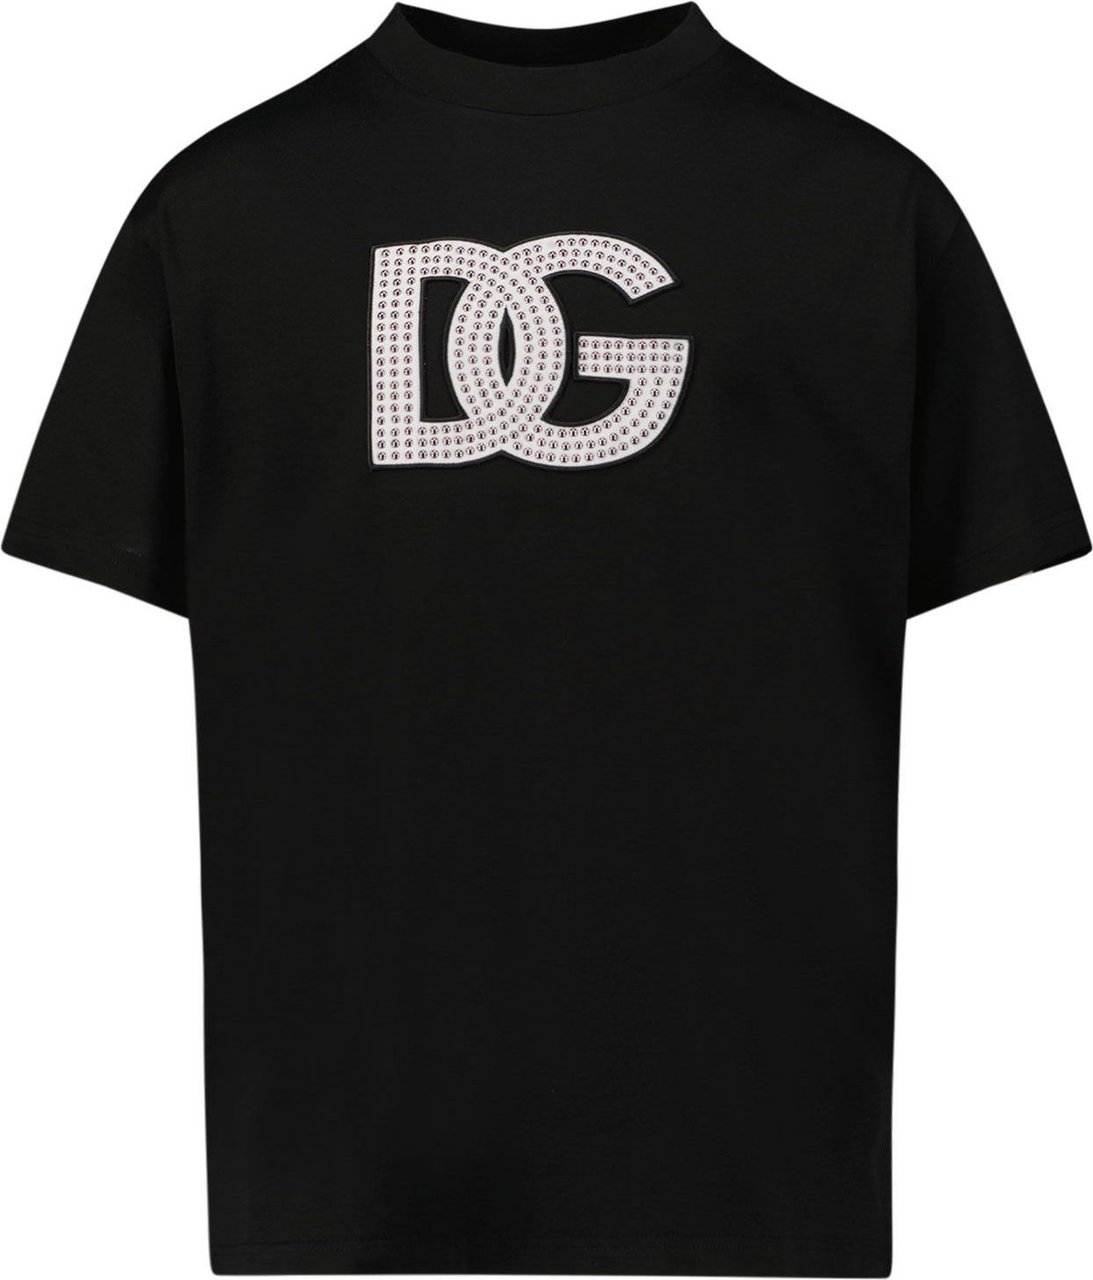 Dolce & Gabbana Kinder T-shirt Zwart Zwart